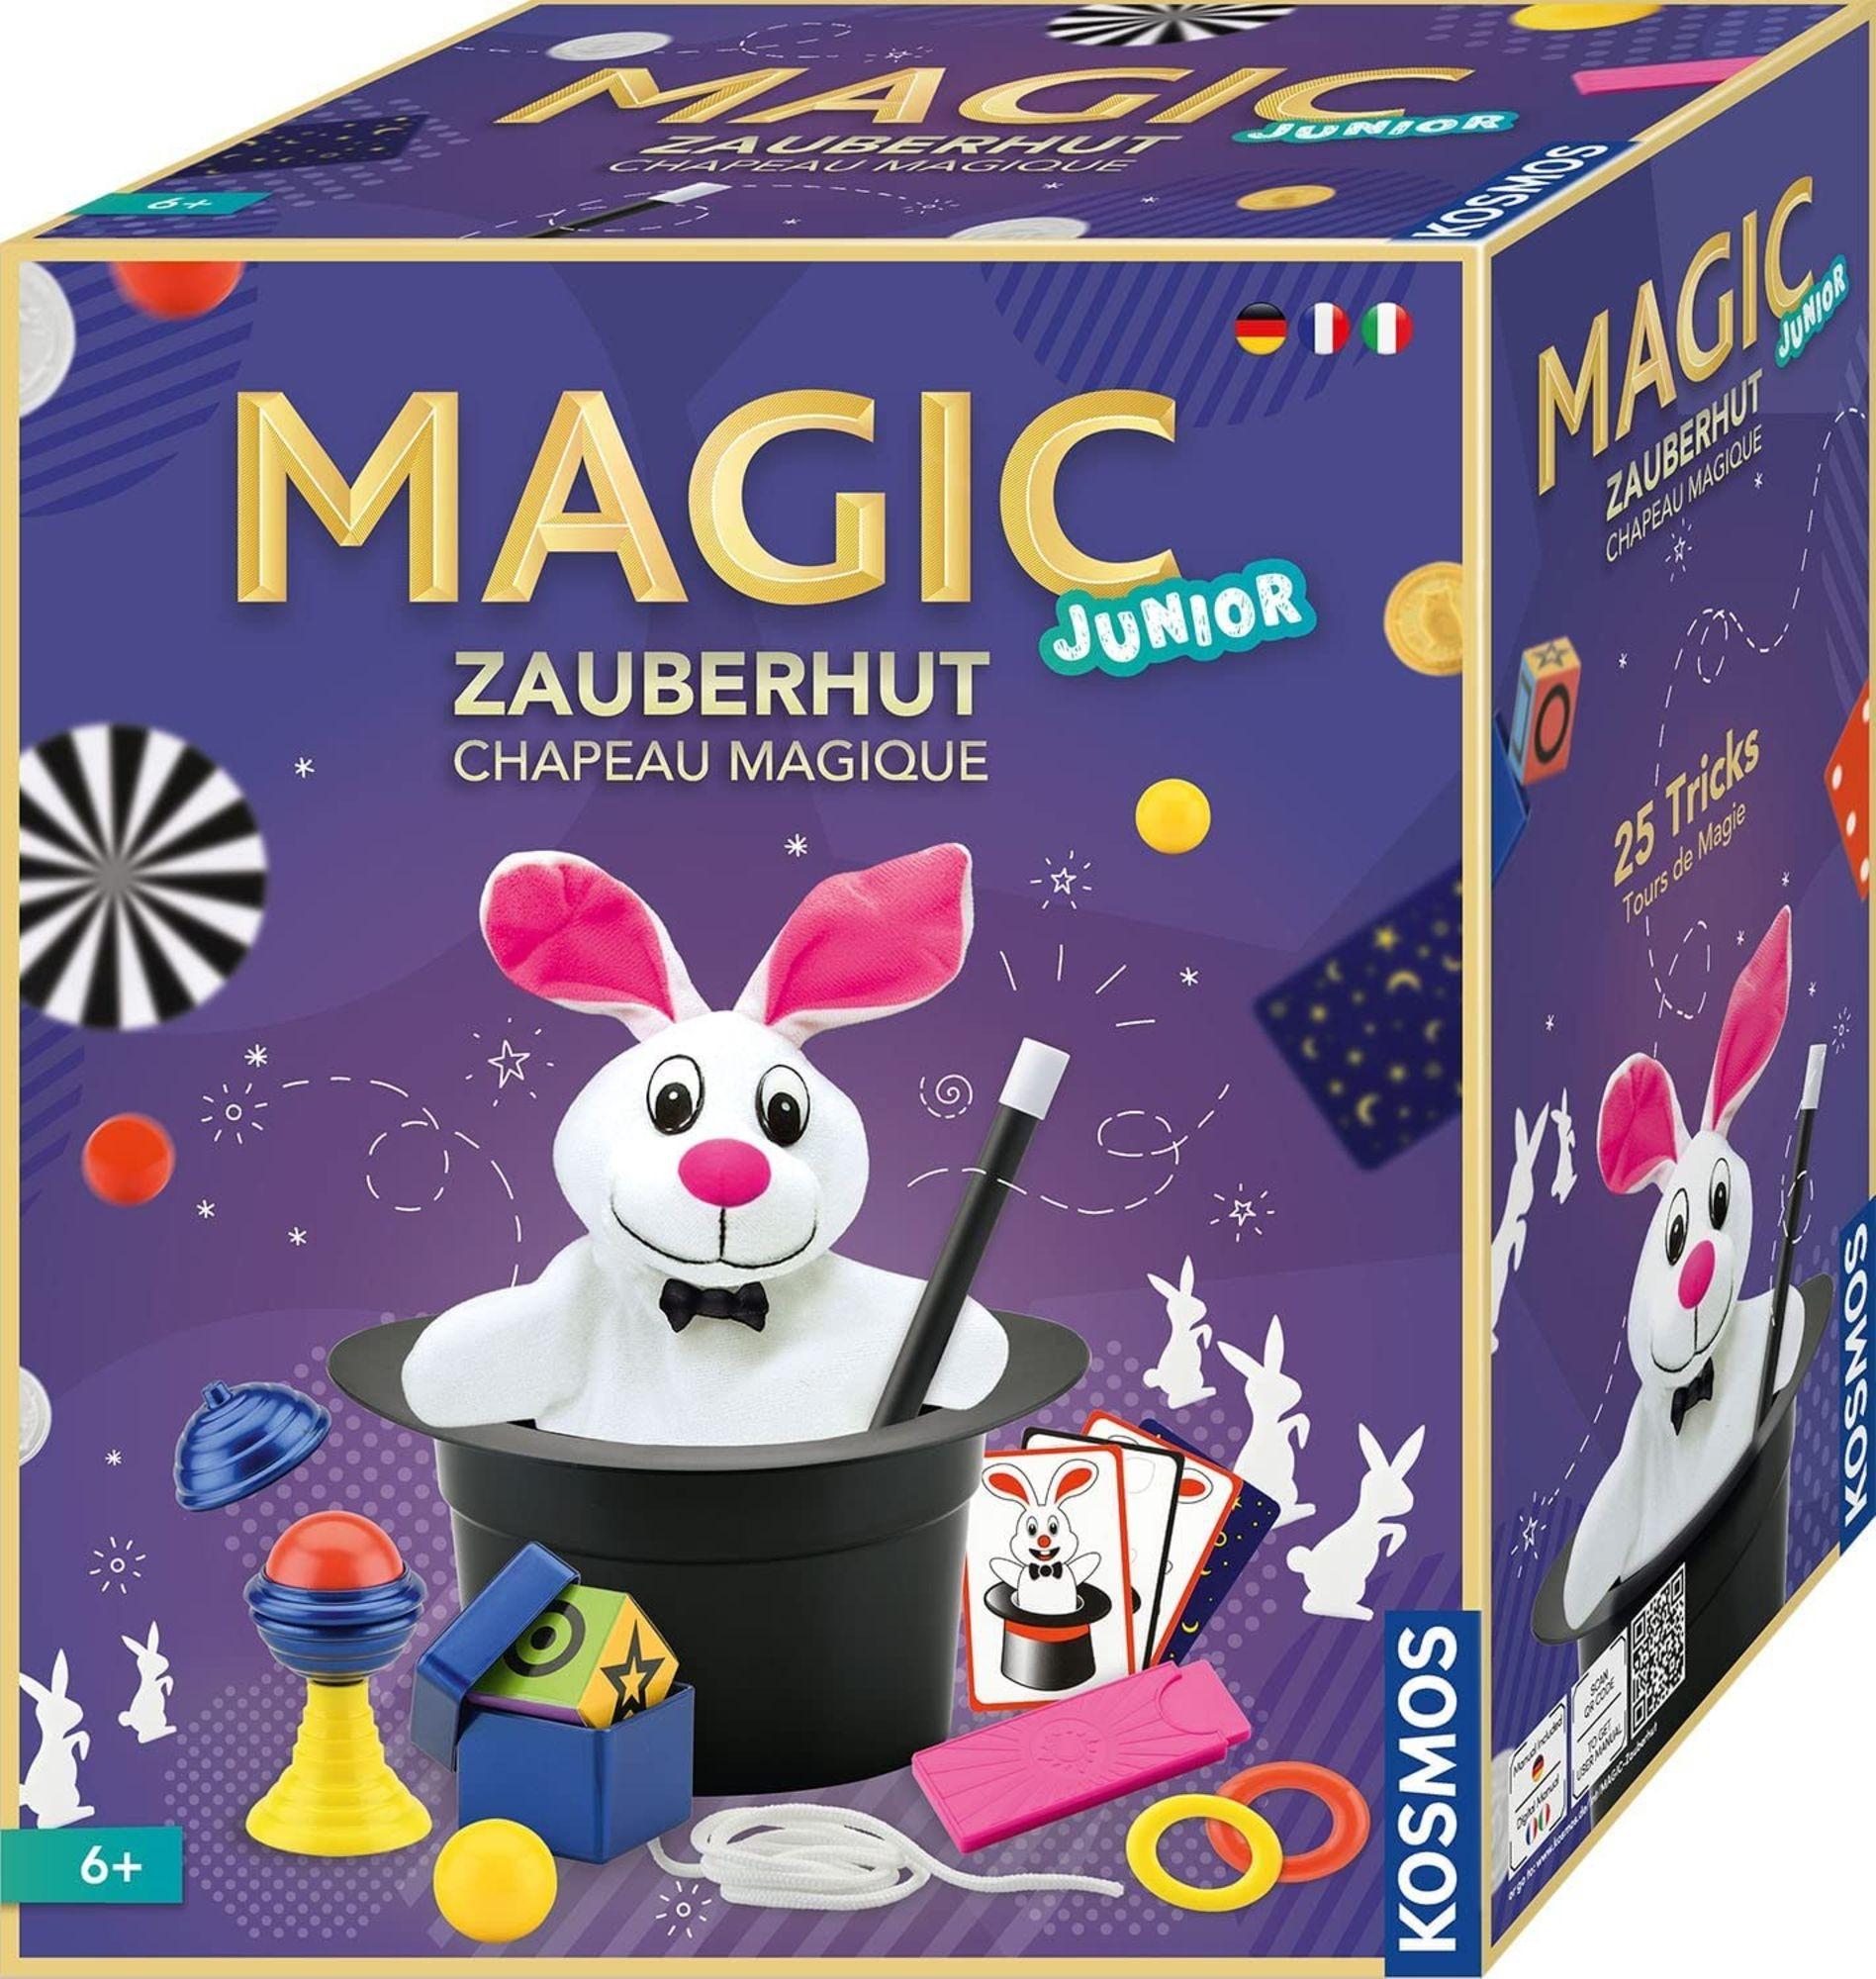 Magic Zauberhut Junior